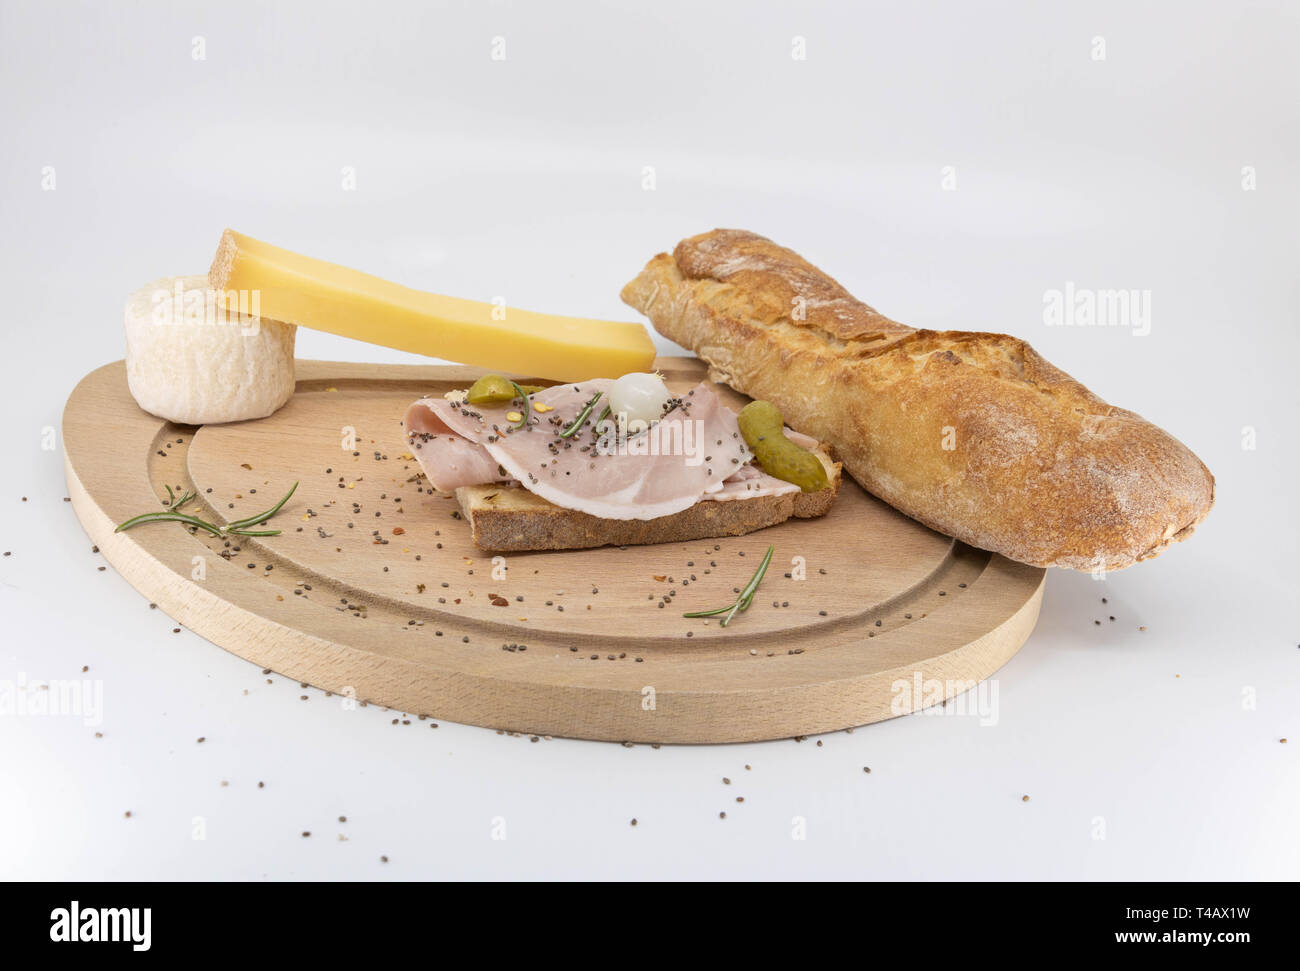 Des collations français : baguette, fromage fermier et deli sandwich Banque D'Images